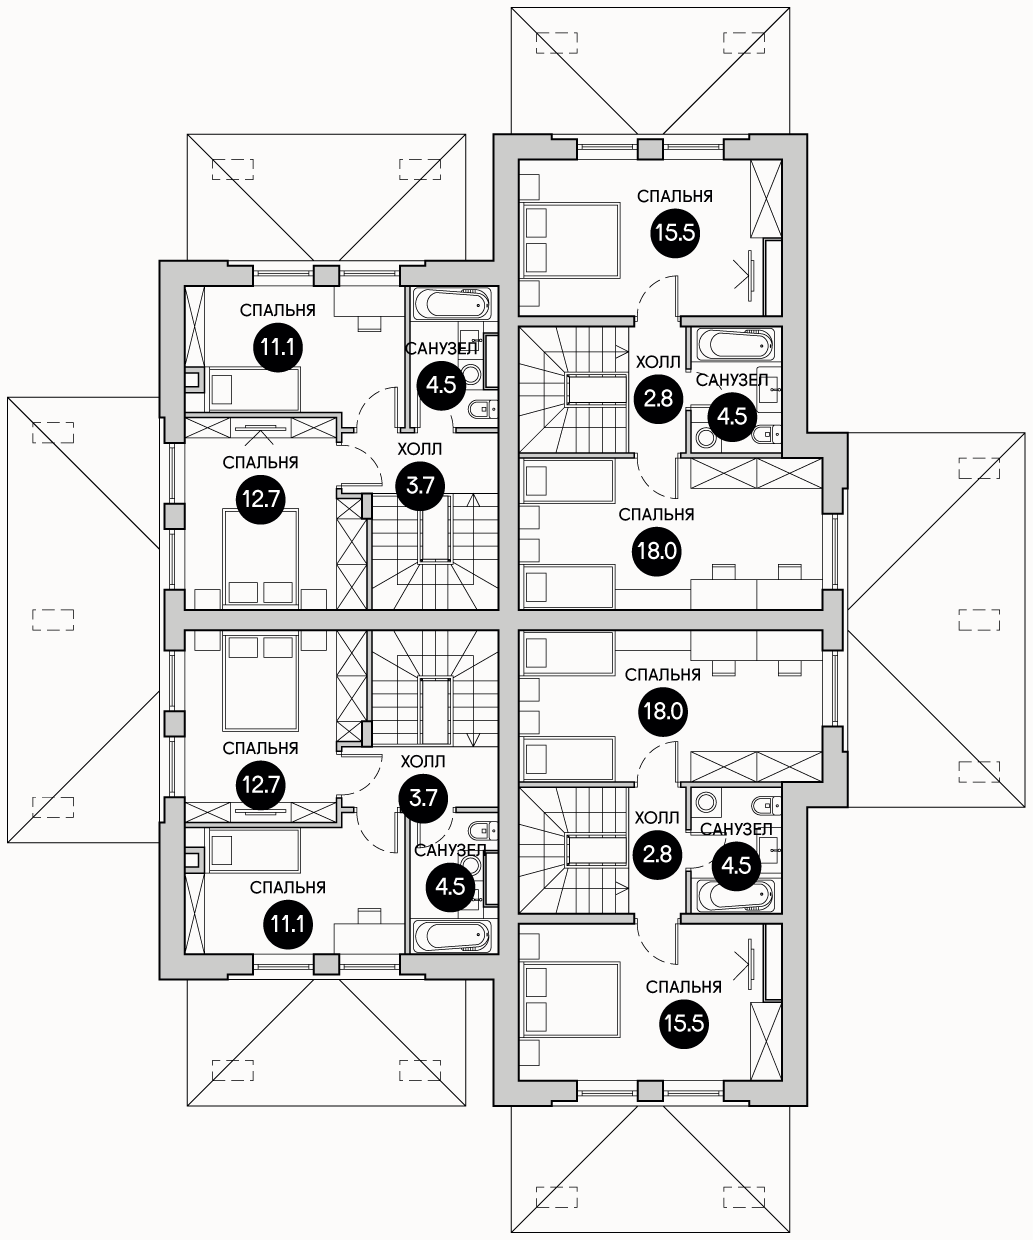 Планирока 2-го этажа в проекте Квадрохаус эконом класса KB-70/85